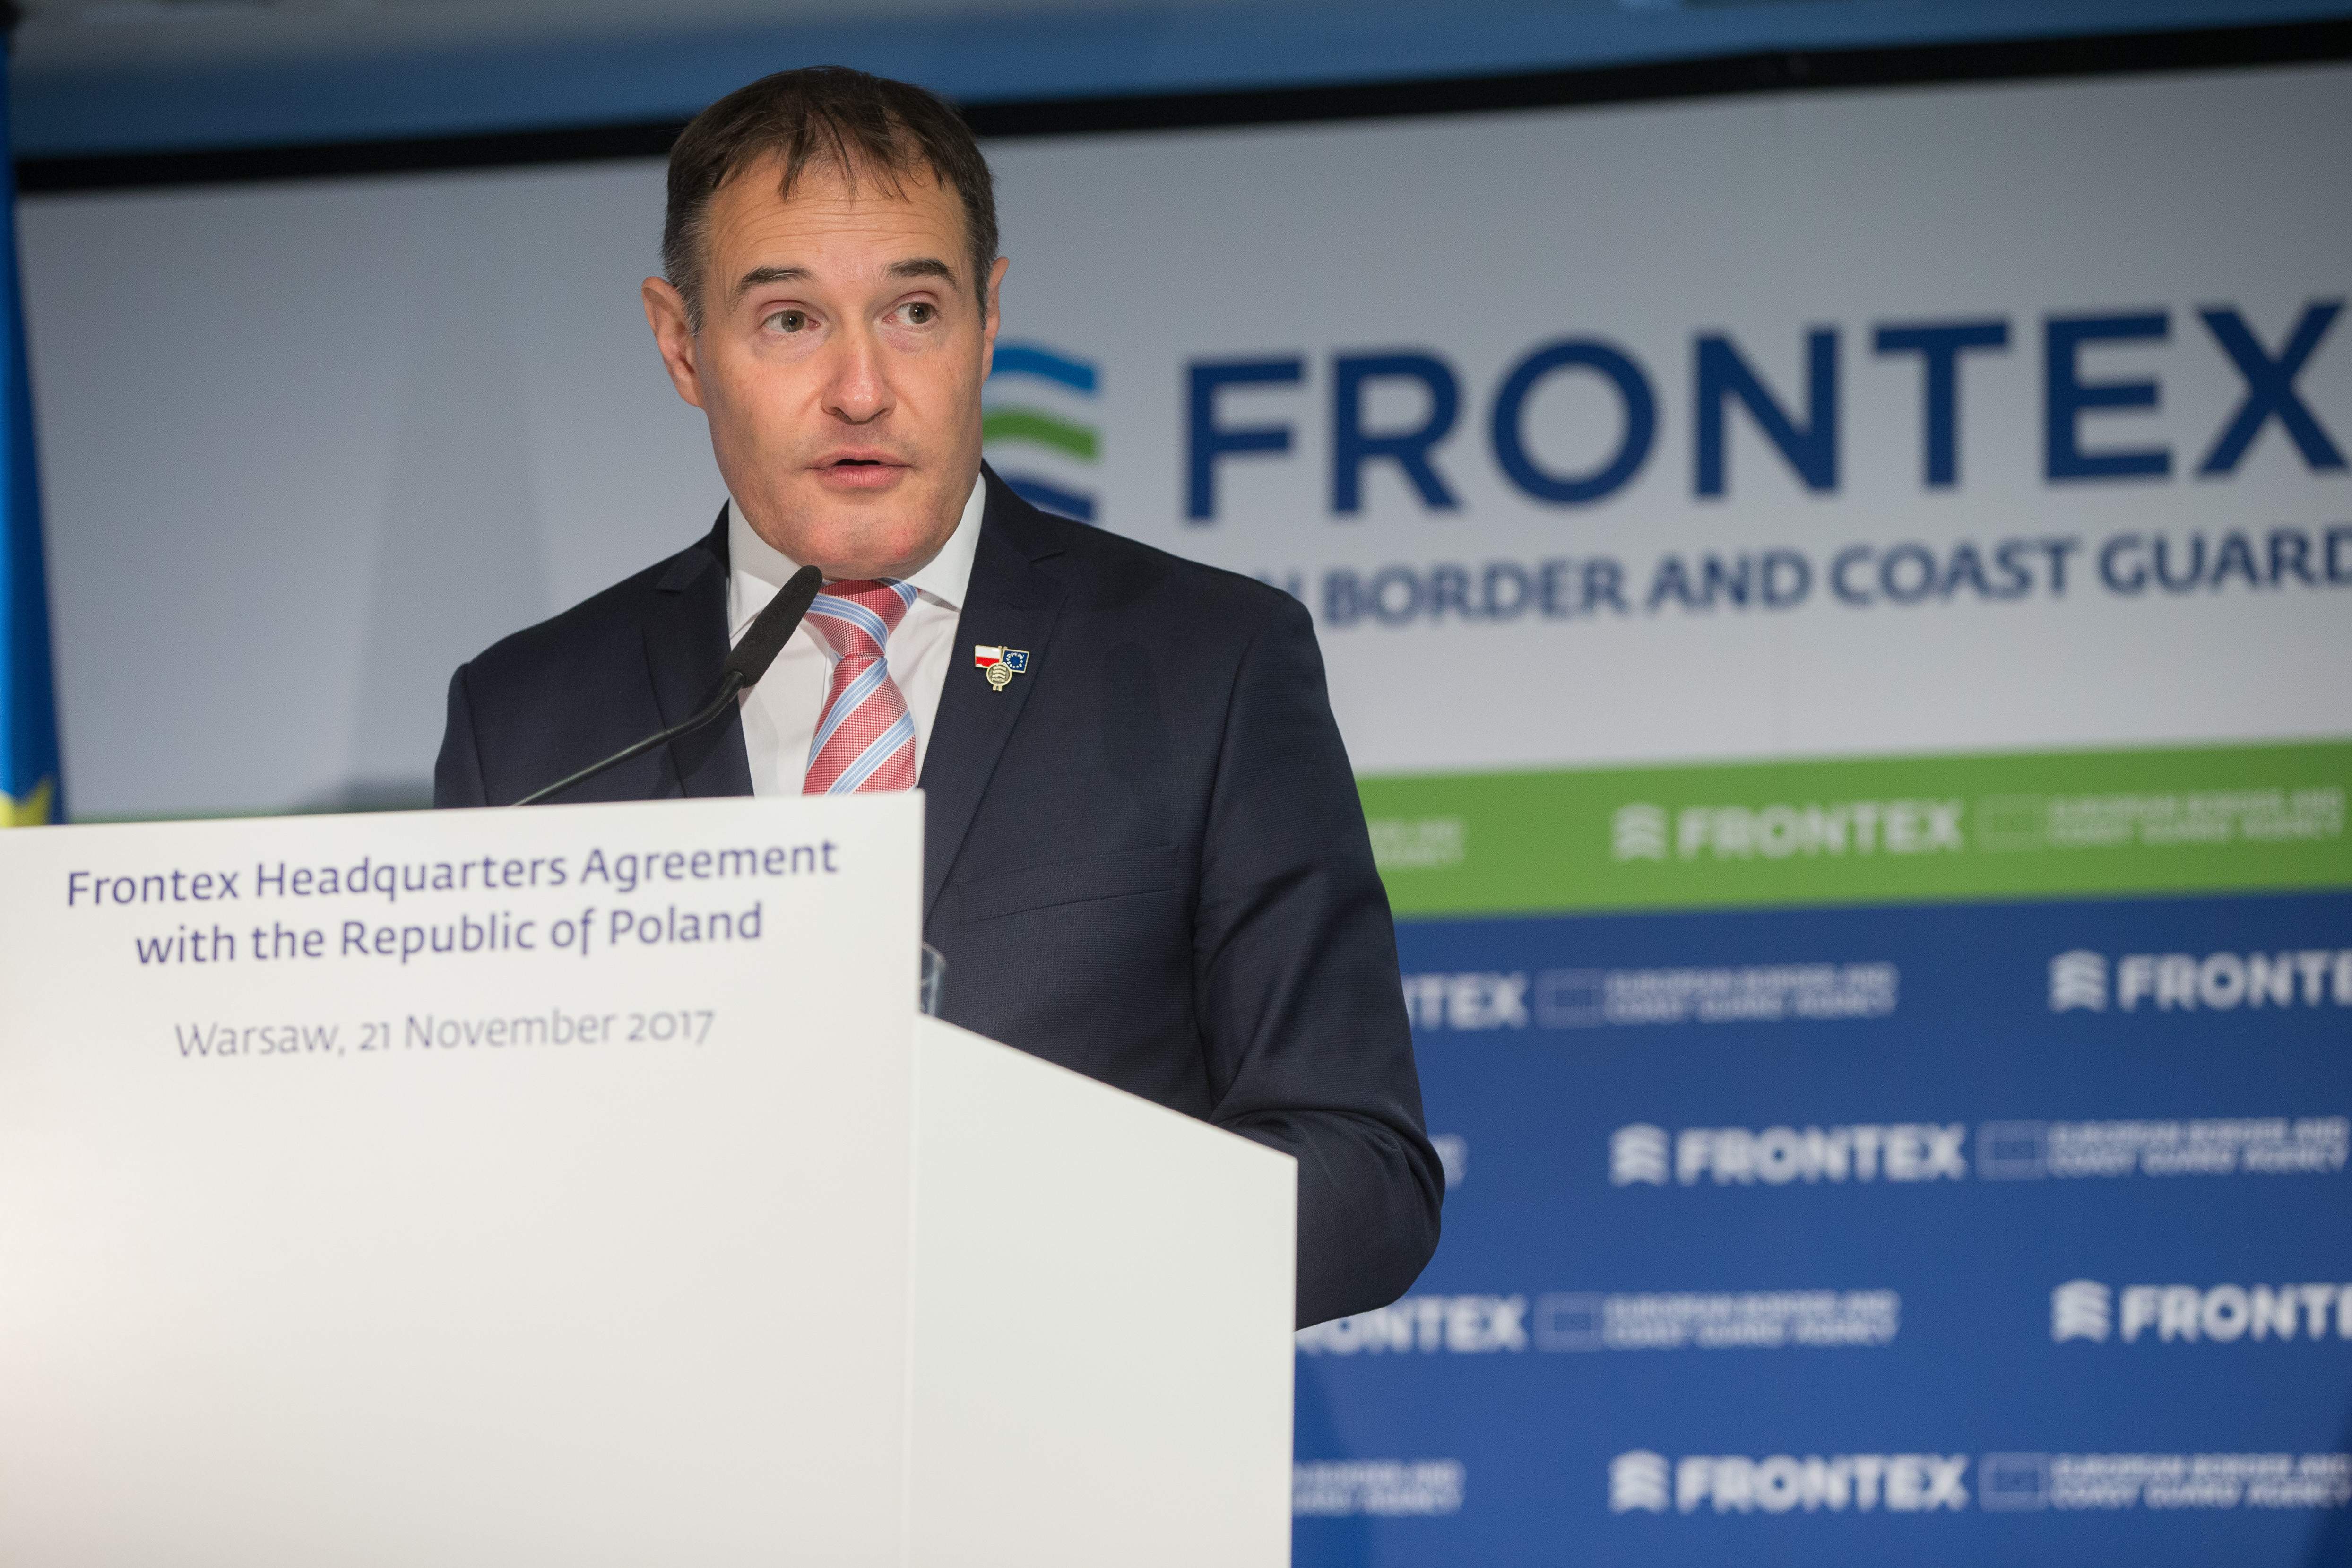 El exdirector de Frontex da el salto a la política y se une al partido de extrema derecha de Le Pen